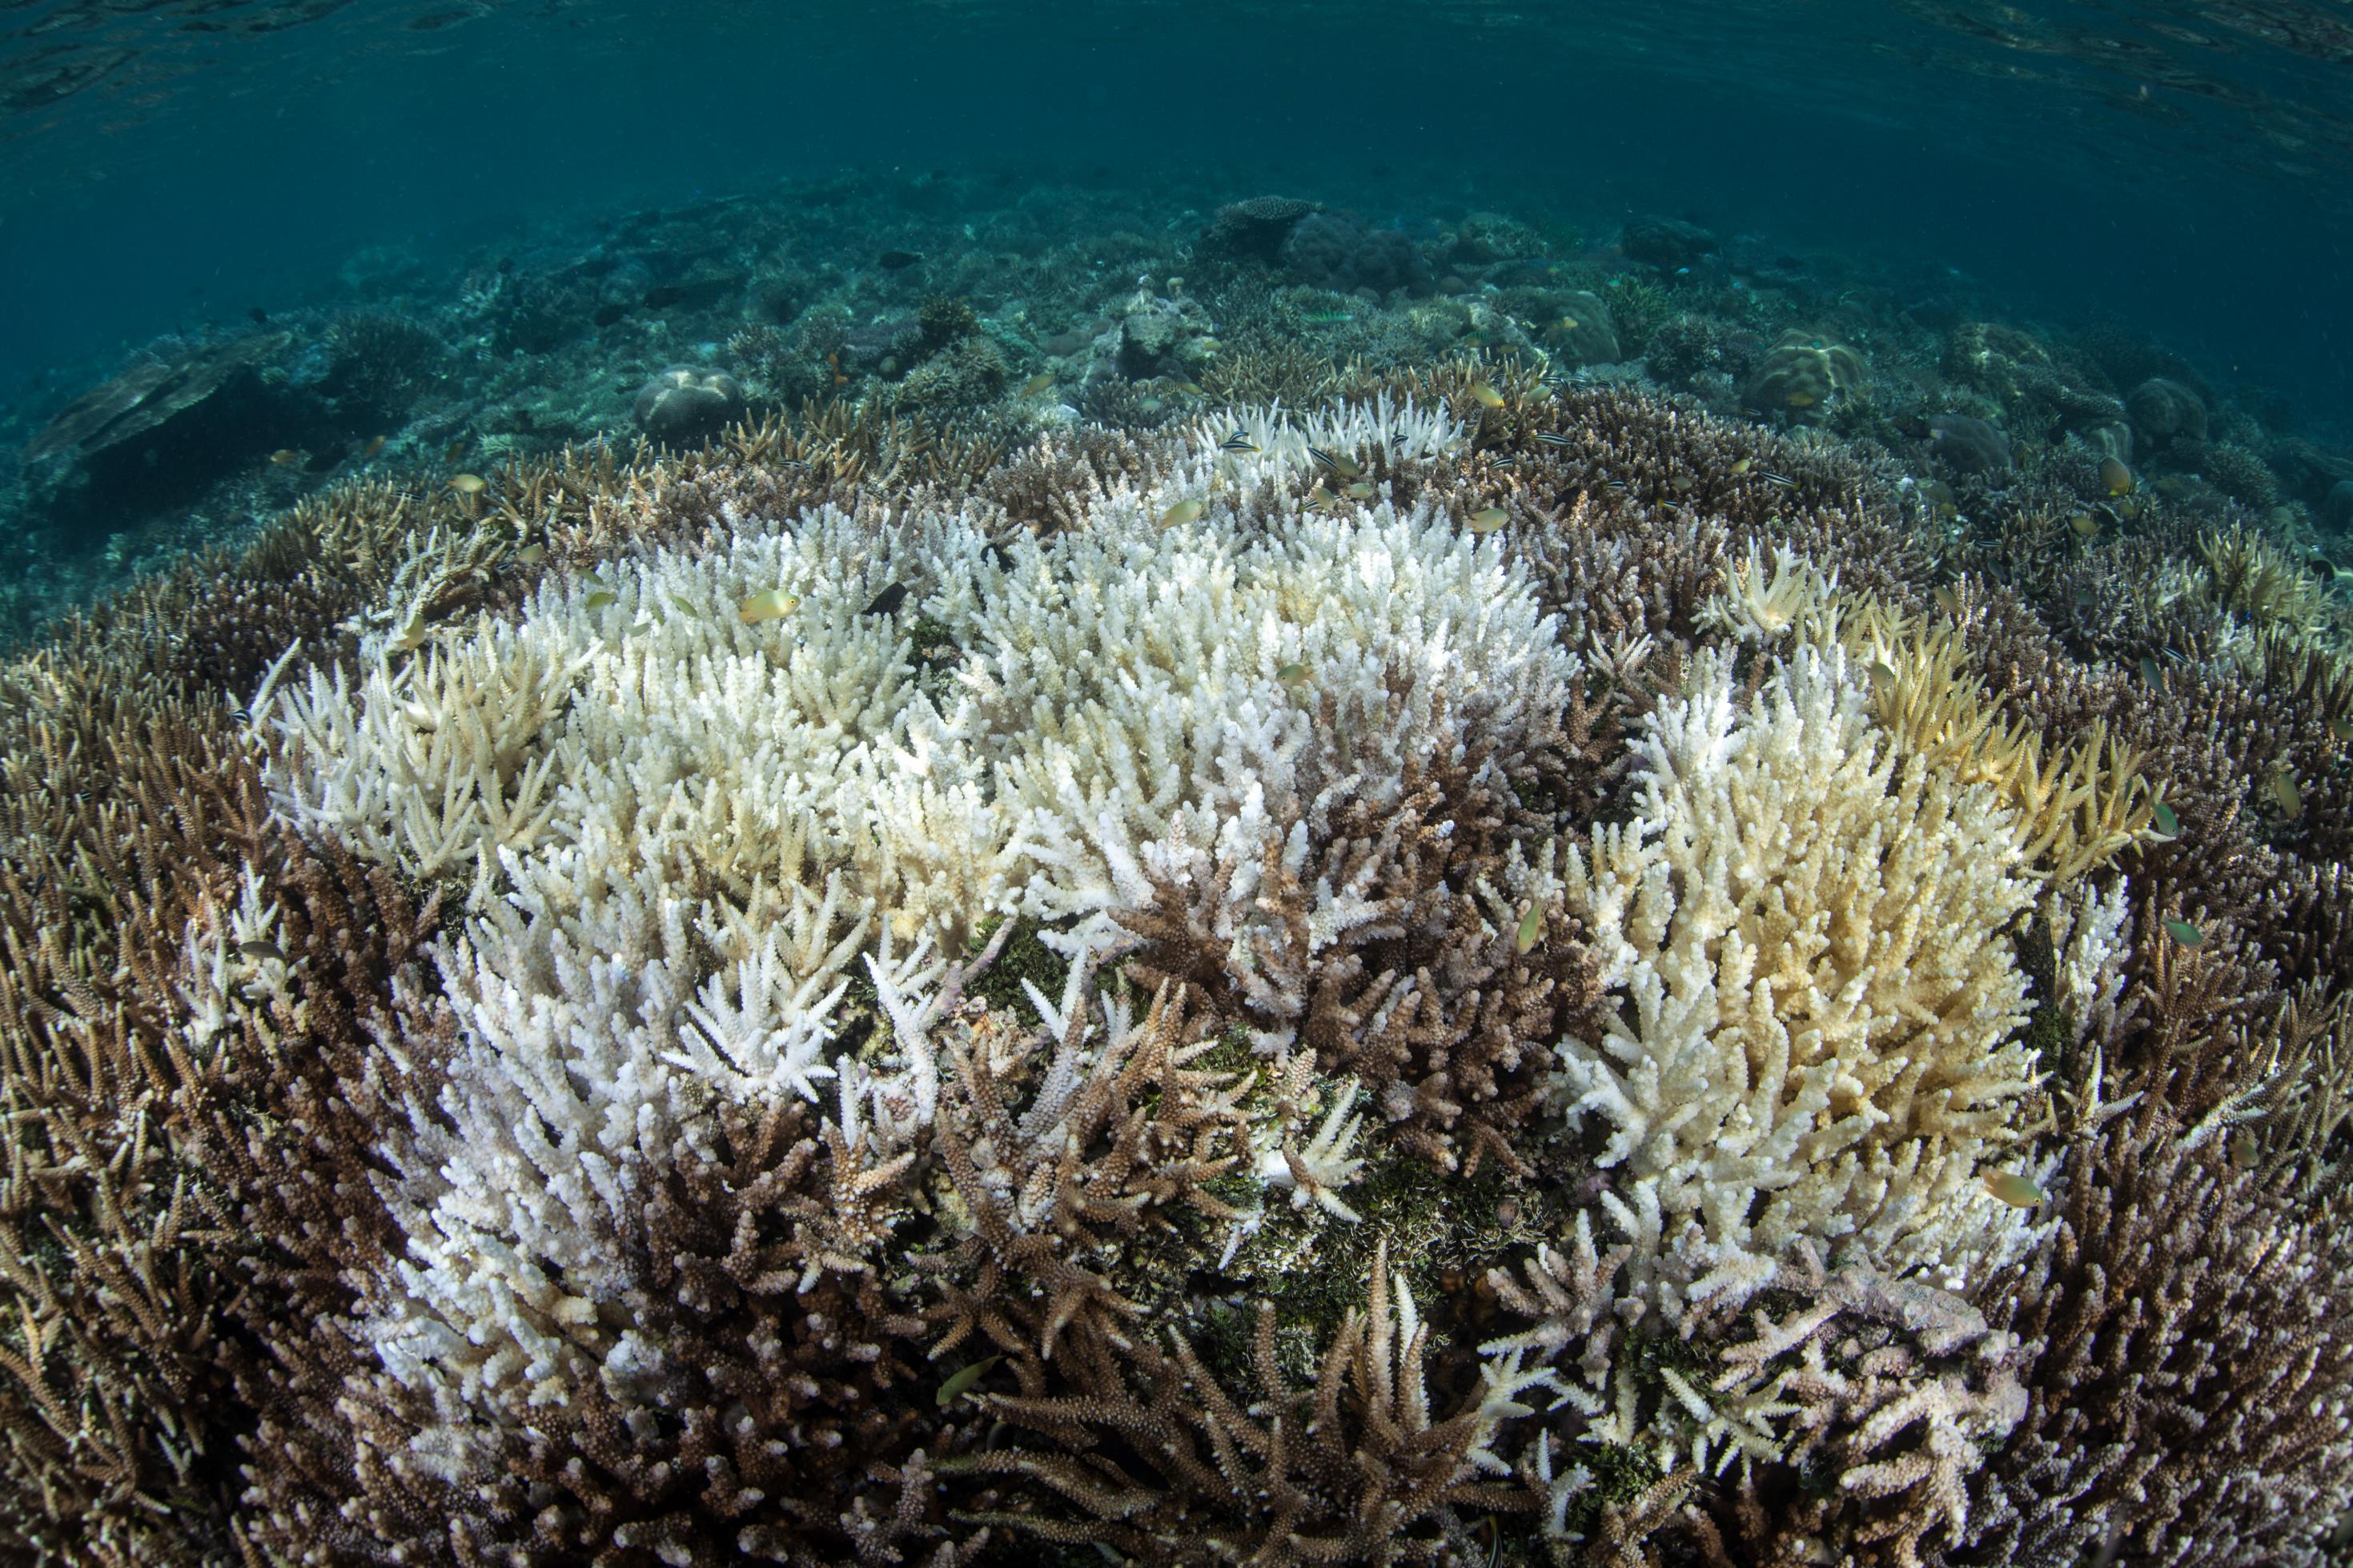 Im Meer sieht man mehrere graue und weiße Korallen – eine Korallenbleiche.